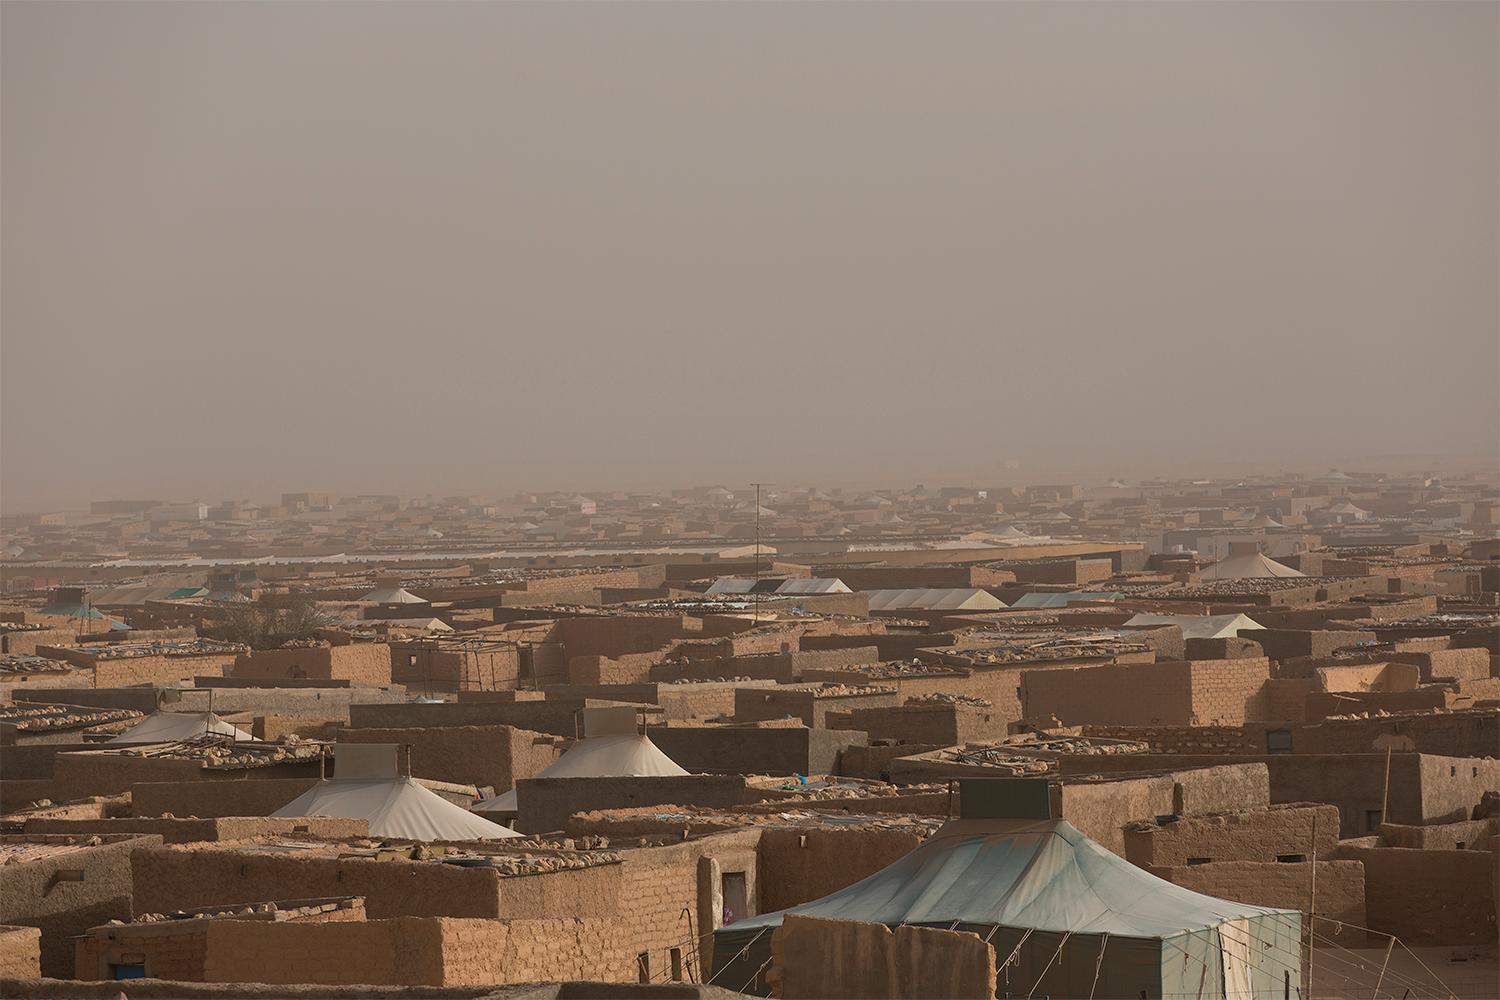 Flyktinglägret Smara i Algeriet, ett gytter av lerhus, tält och sand. Här finns skolor för barnen och många ungdomar genomgår högre utbildningar, men som statslösa flyktingar befinner de sig sedan i en återvändsgränd. Johan Persson